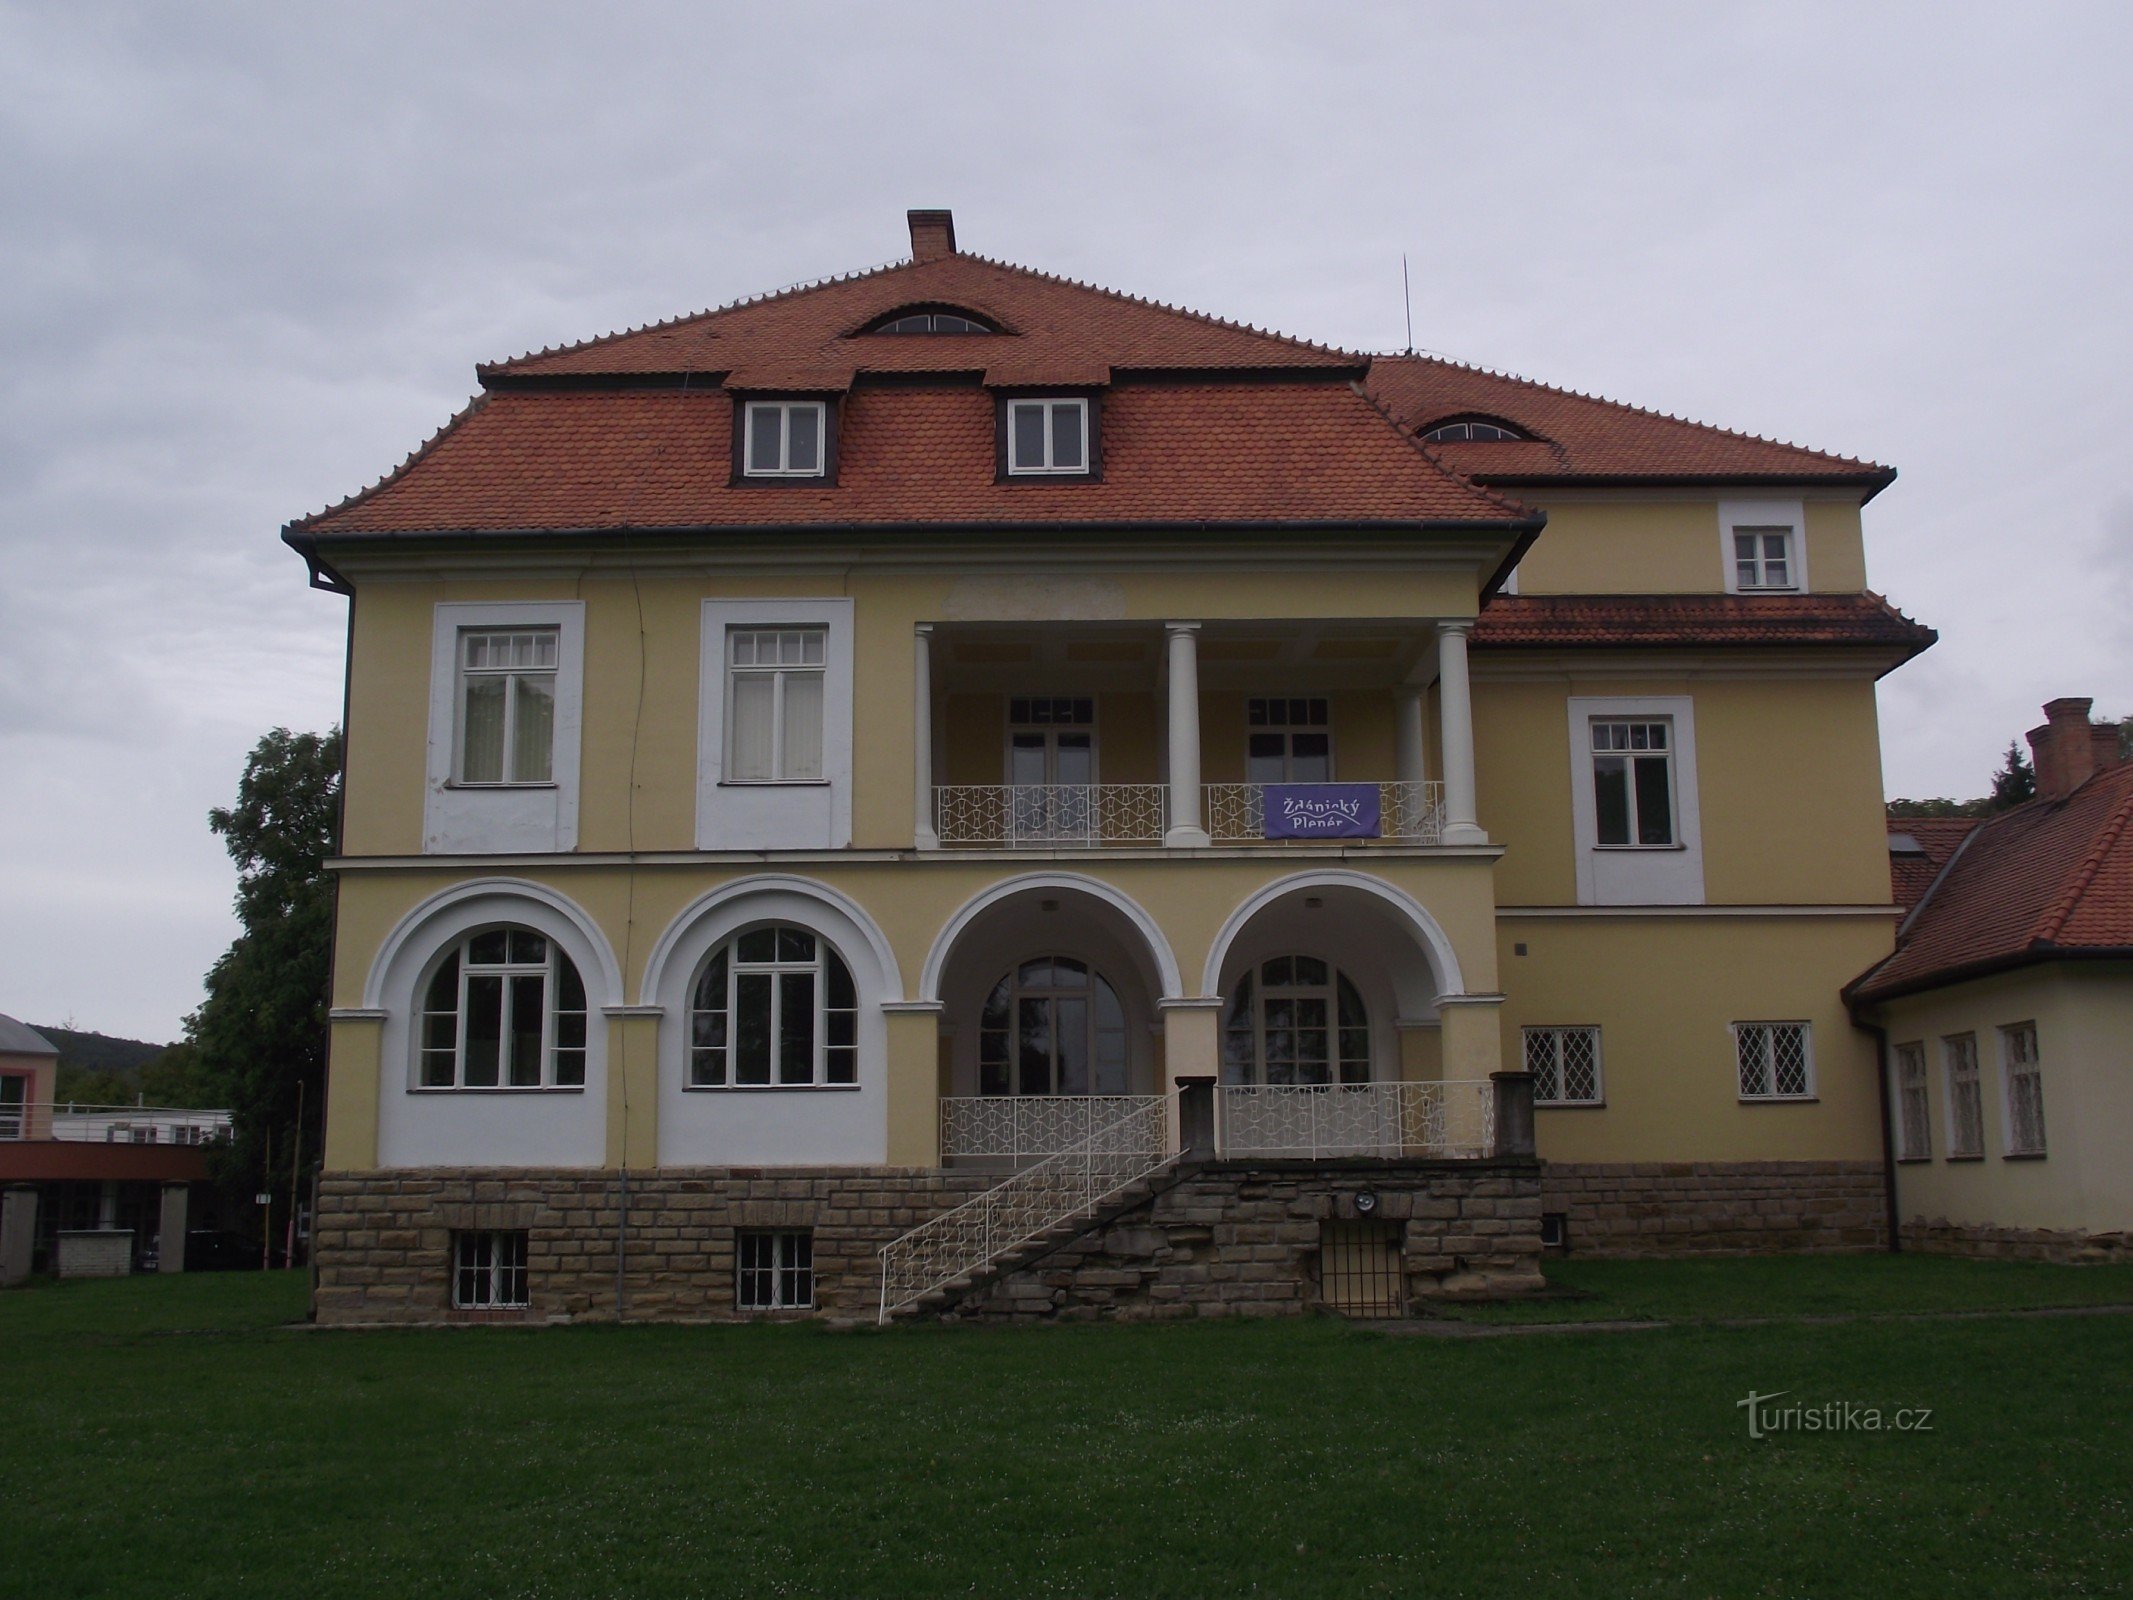 Ždánice - lâu đài (Seidl's / Loudon's) biệt thự